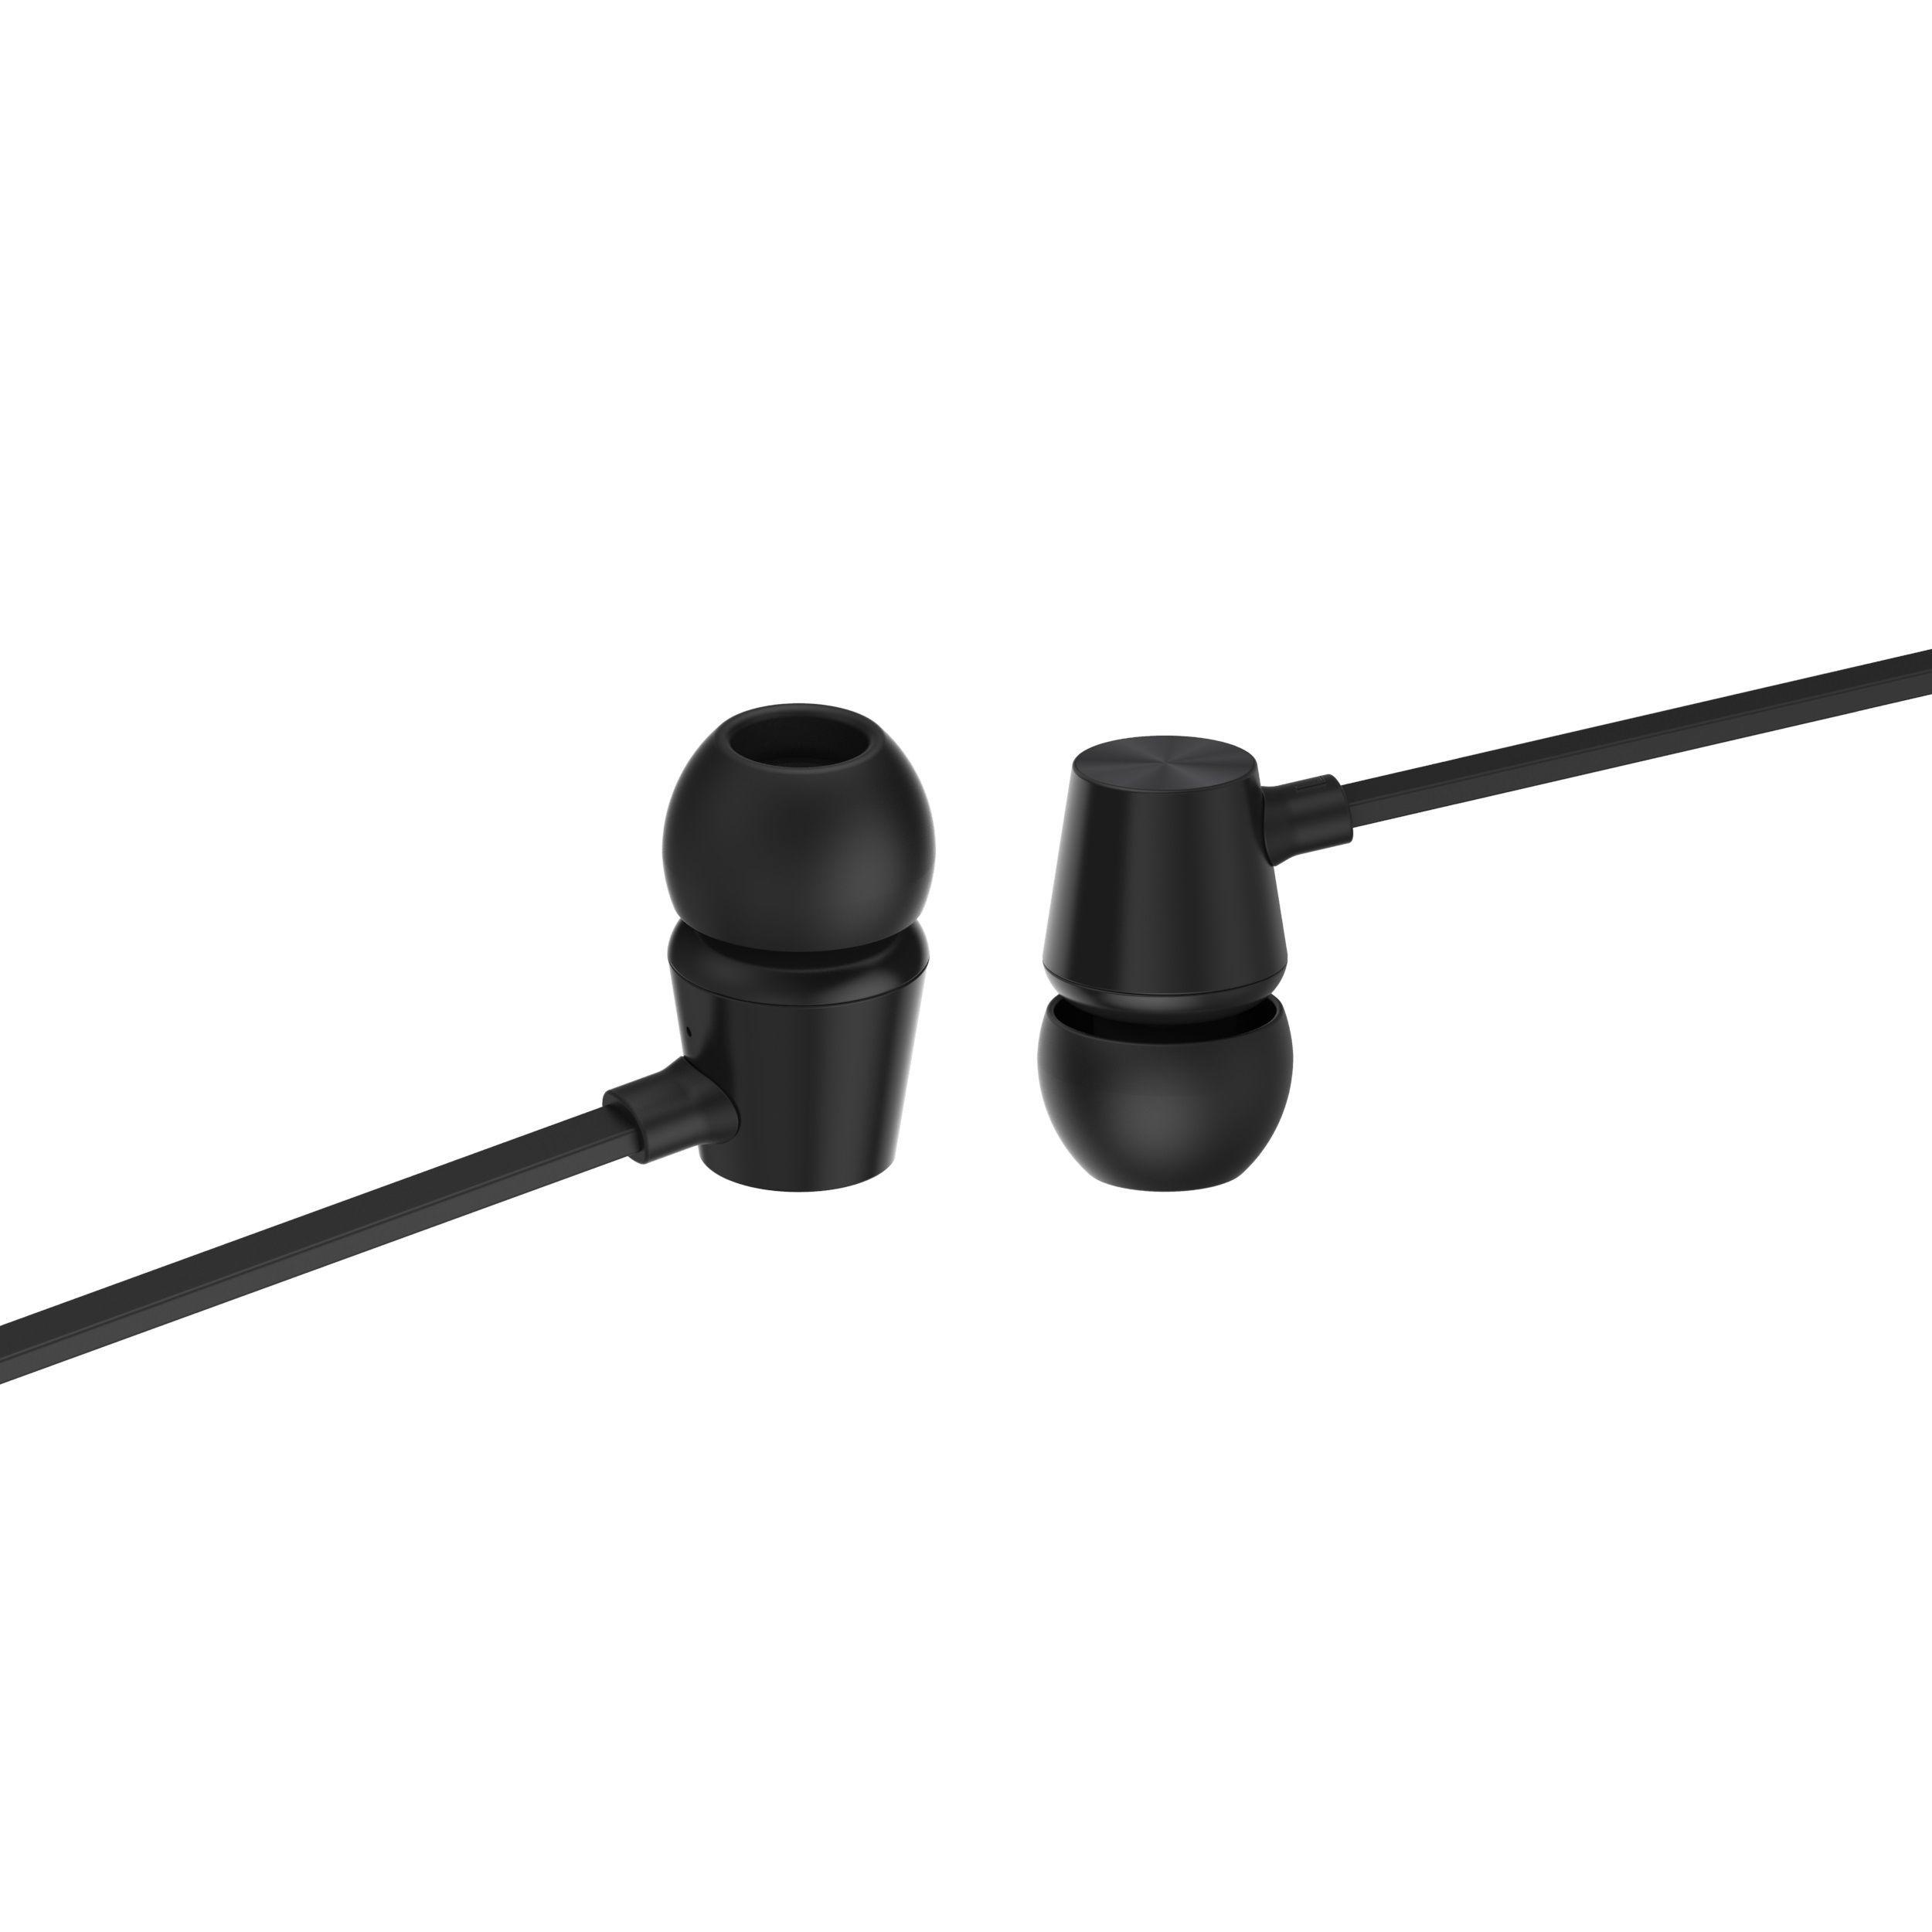 Headphones Swissten Dynamic YS500 wired - black